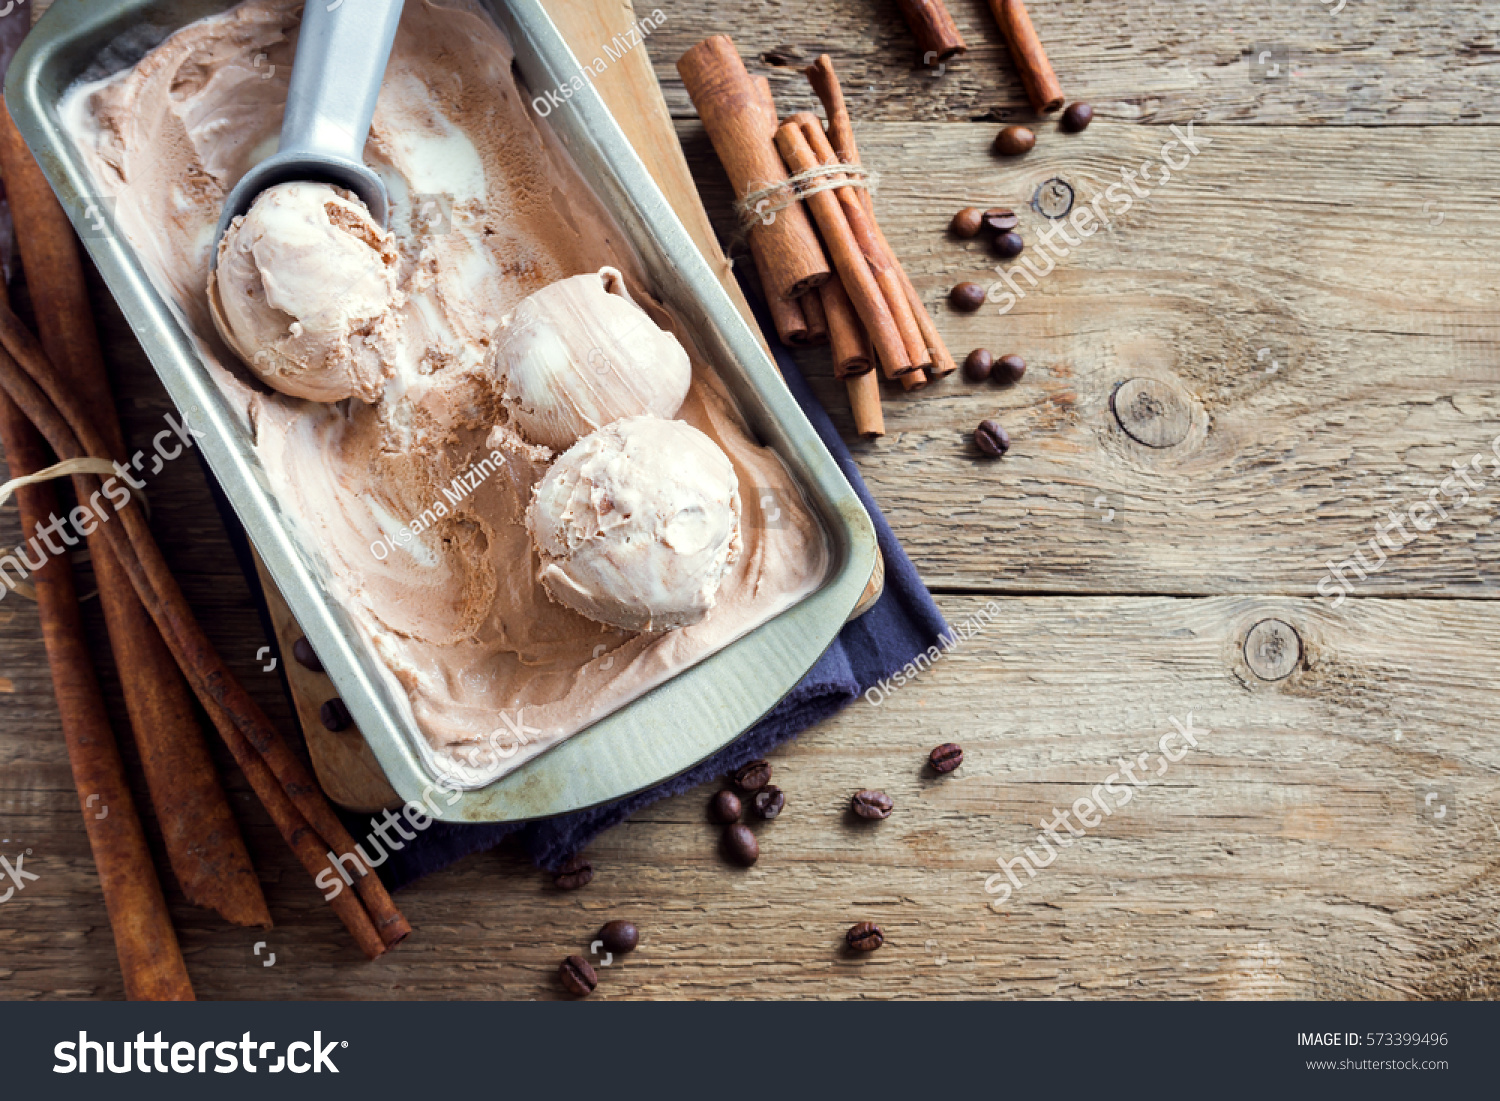 how to scoop frozen ice cream